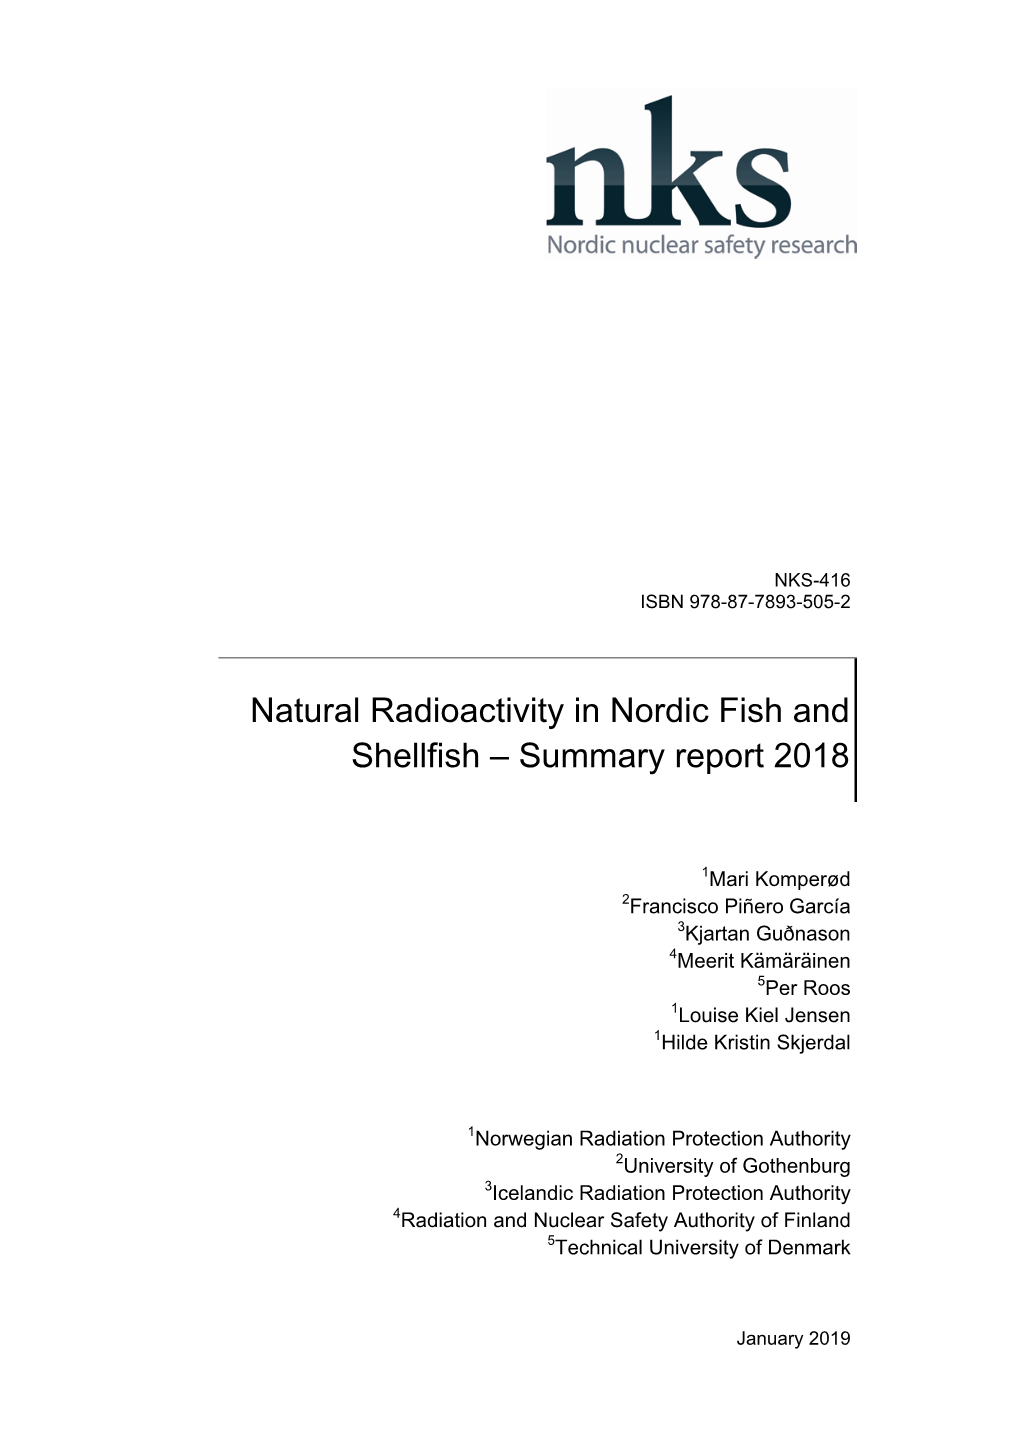 NKS-416, Natural Radioactivity In